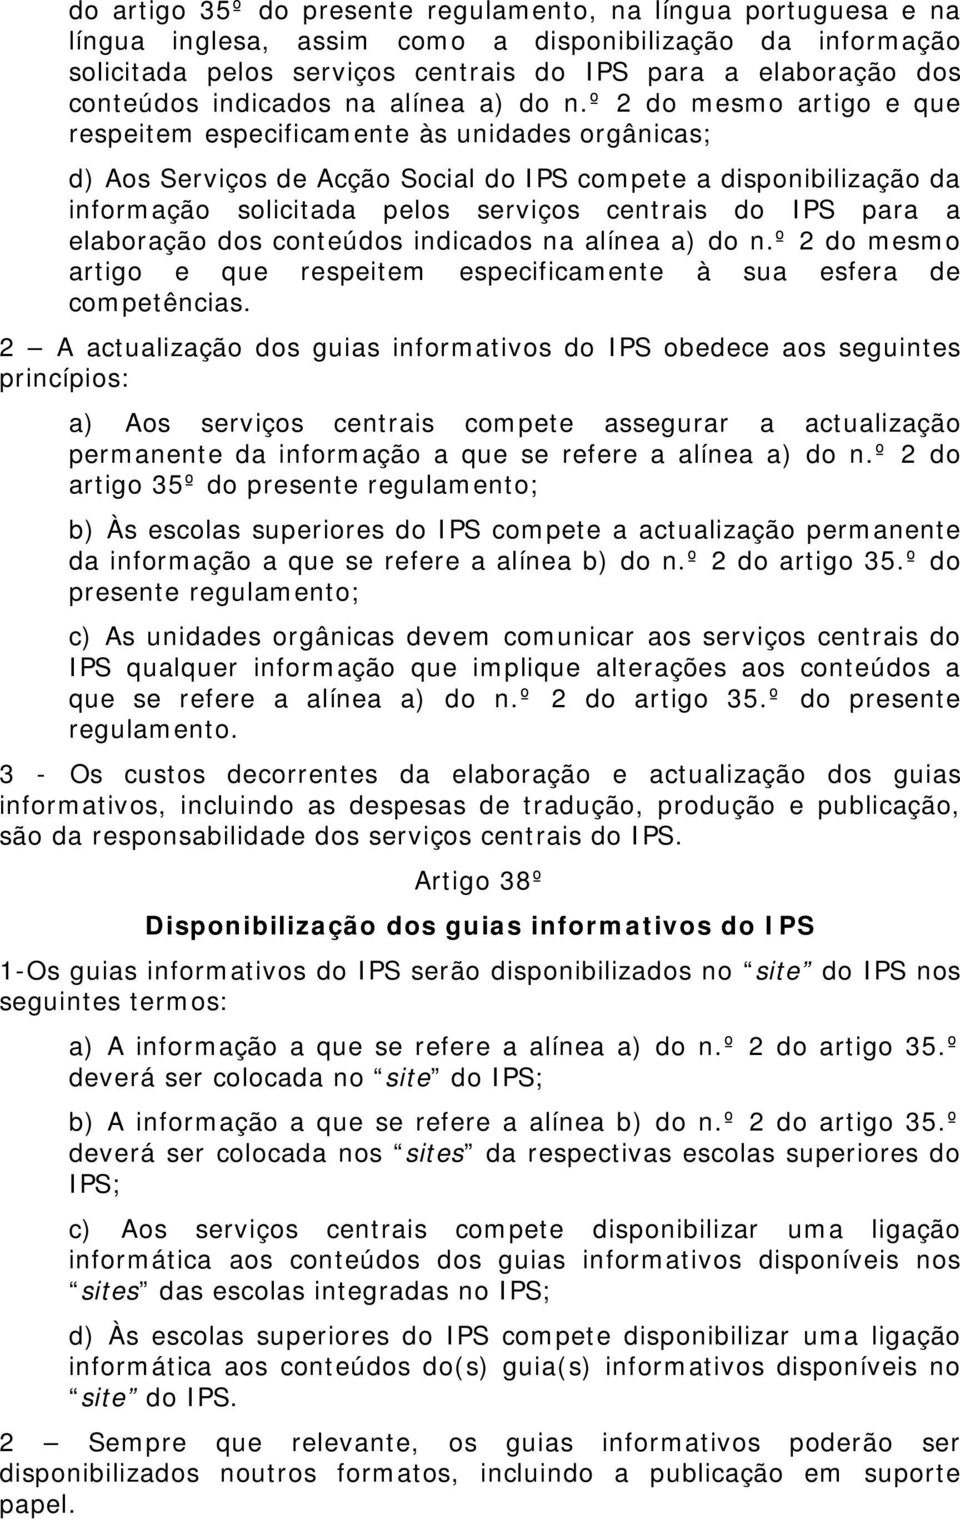 º 2 do mesmo artigo e que respeitem especificamente às unidades orgânicas; d) Aos Serviços de Acção Social do IPS compete a disponibilização da informação solicitada pelos serviços centrais do IPS